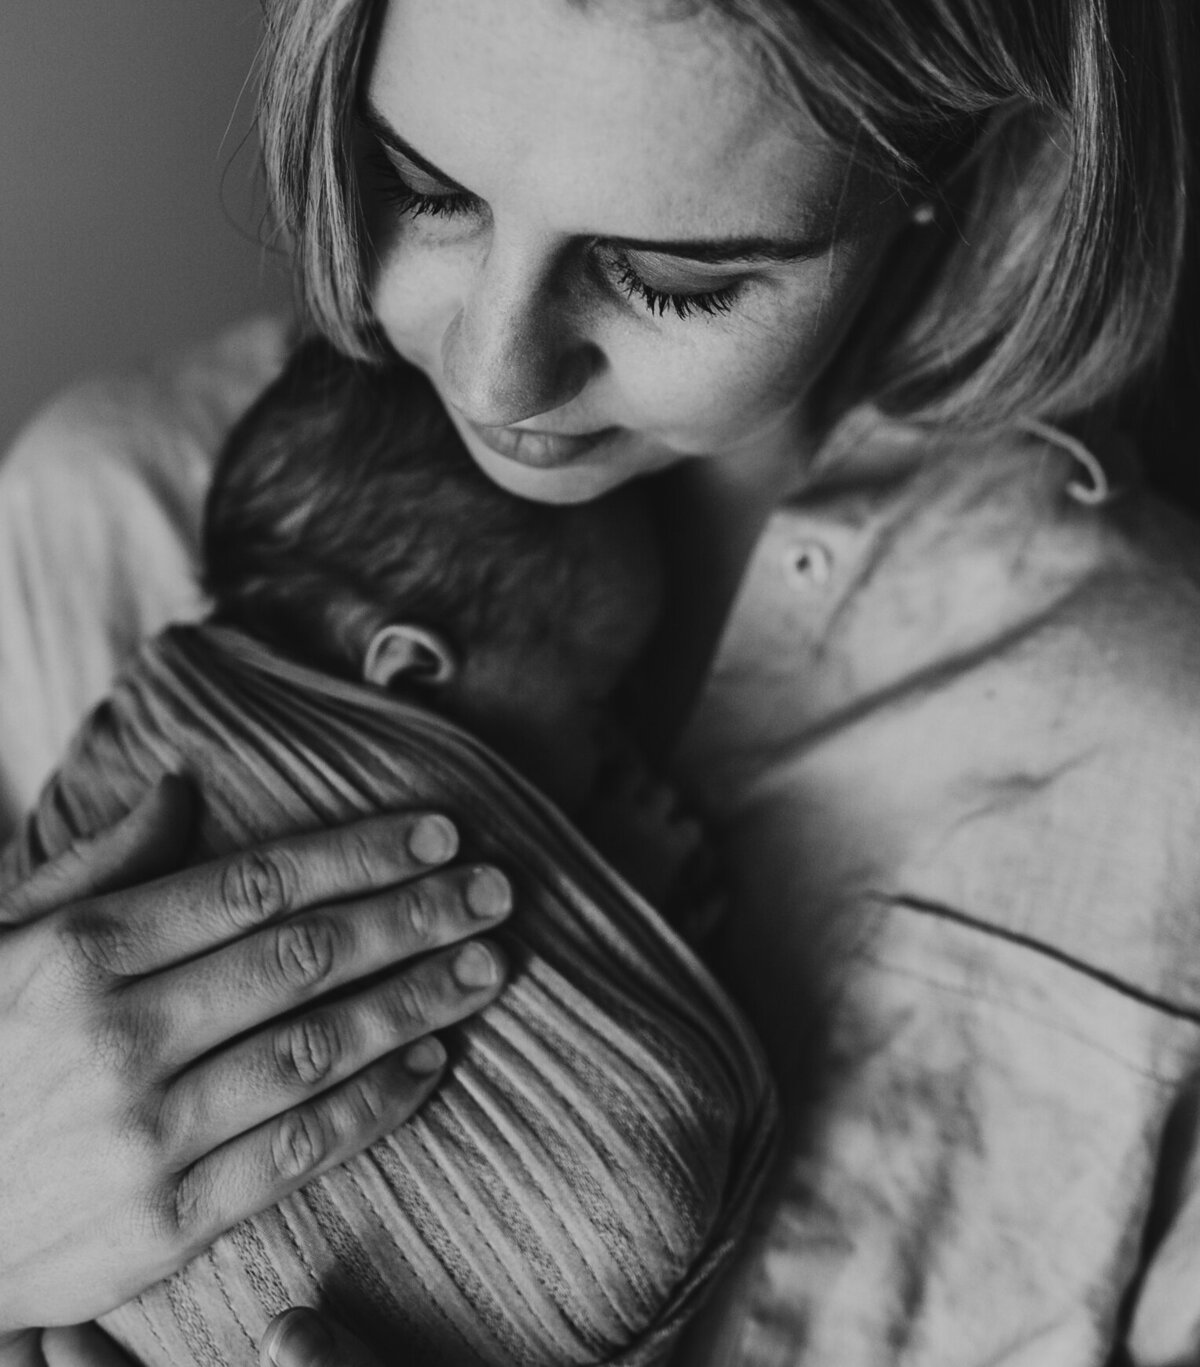 Perth newborn photographer, in studio session  - bub and mum in a beautiful embrace